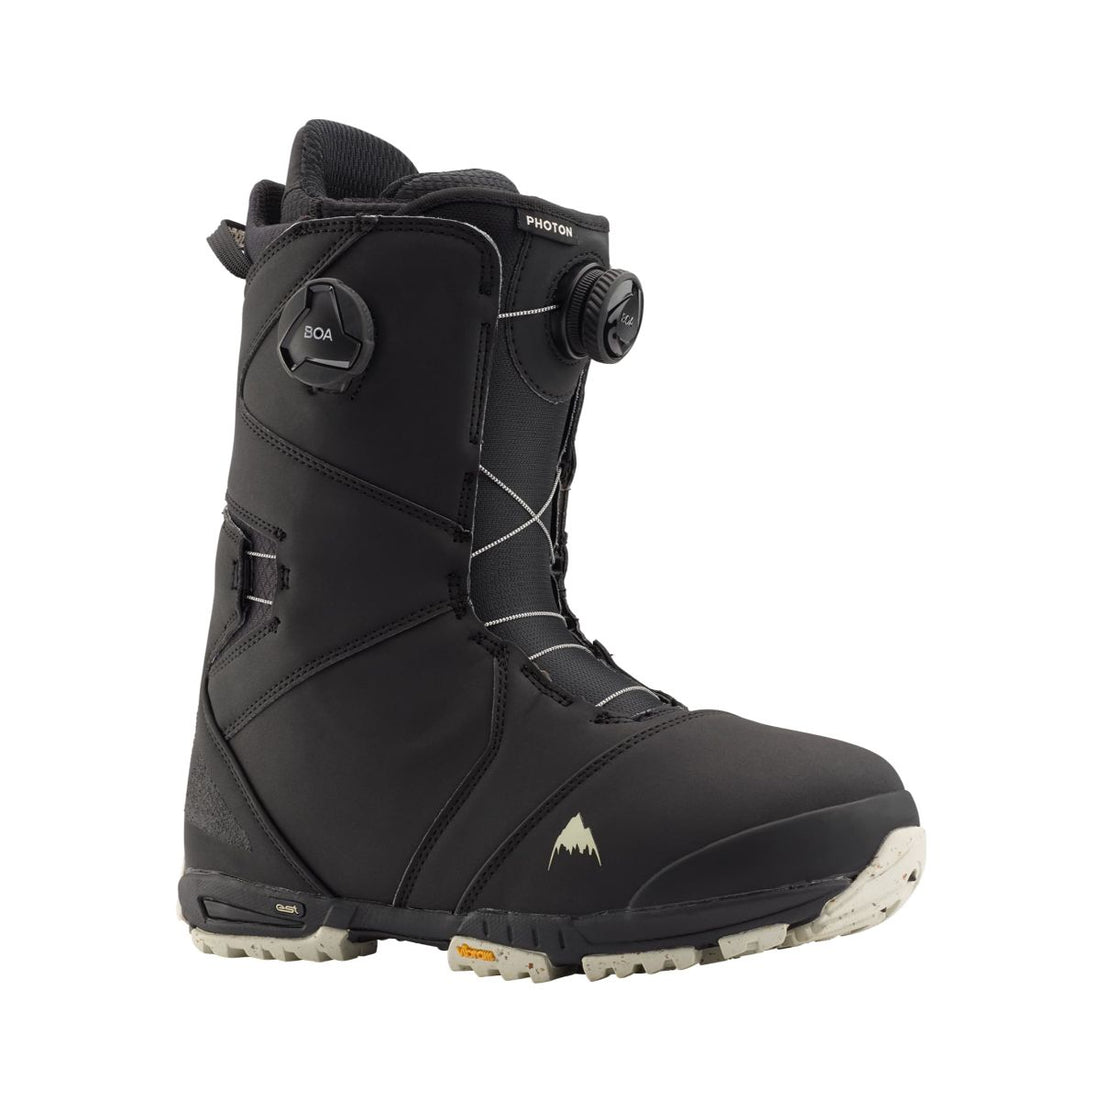 Burton Photon Boa Asian Fit Snowboard Boots 2020